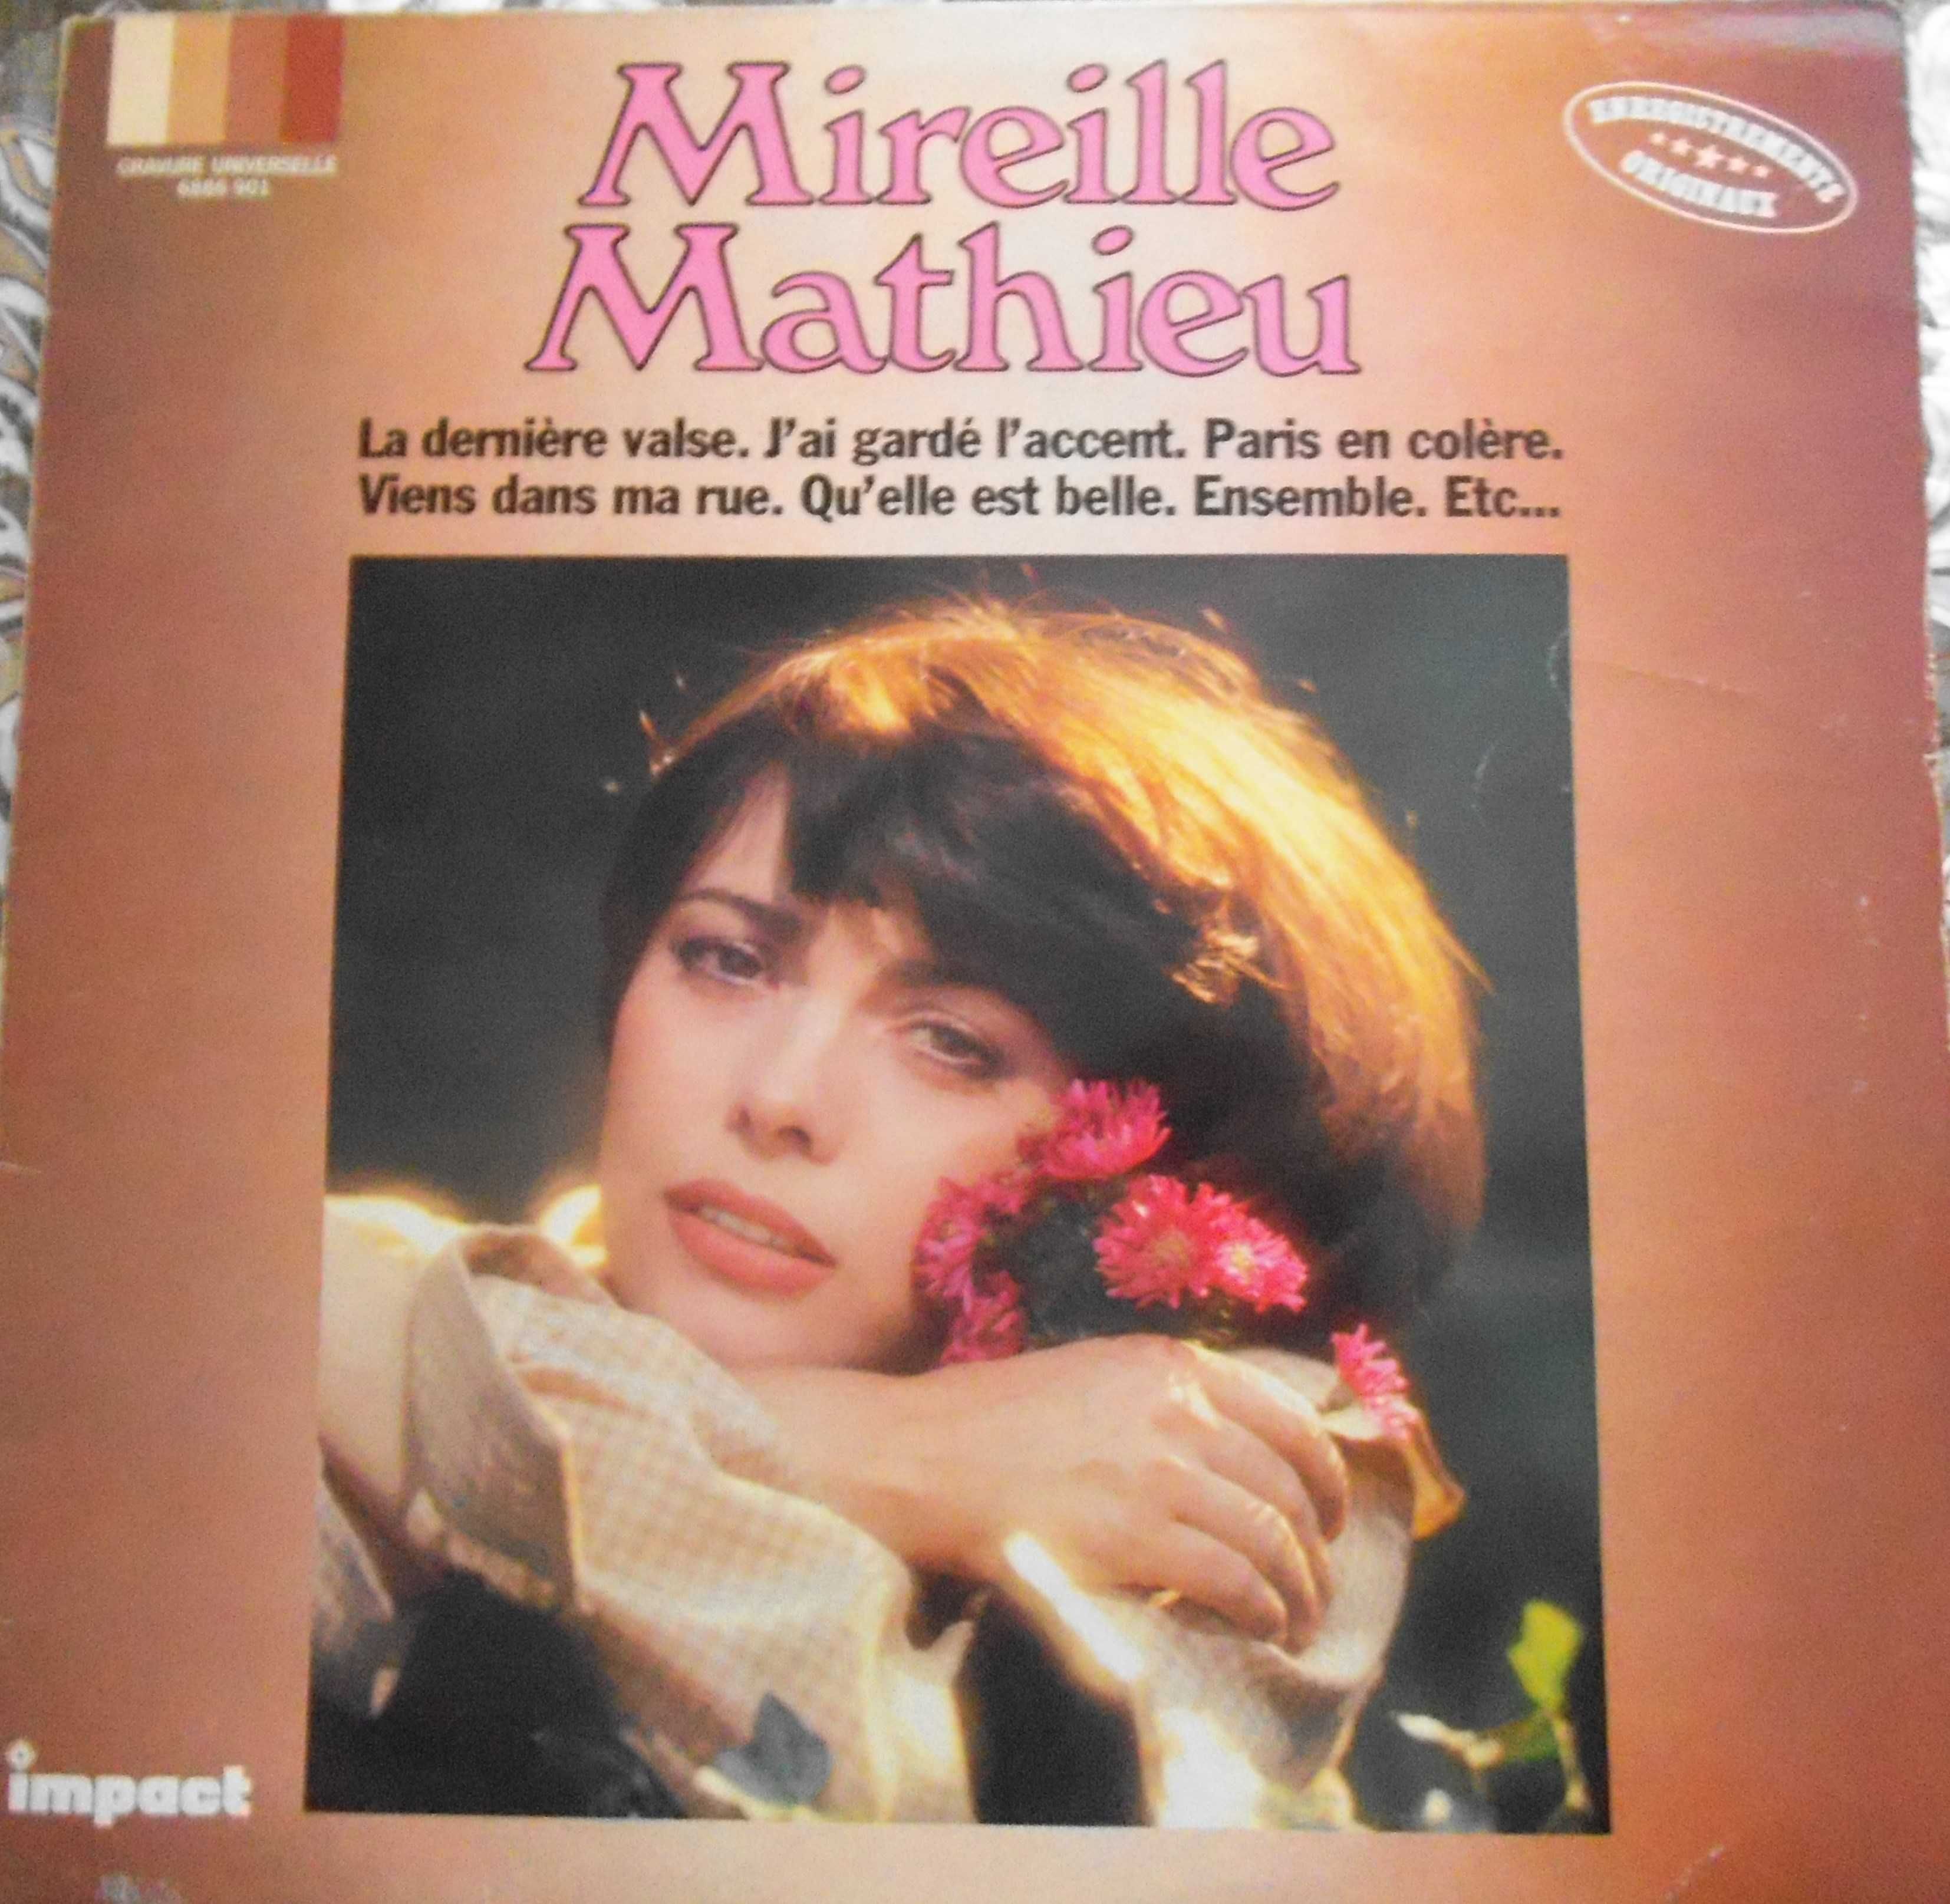 10 виниловых (фирма ) пластинок легендарной певицы Мирей Матье.